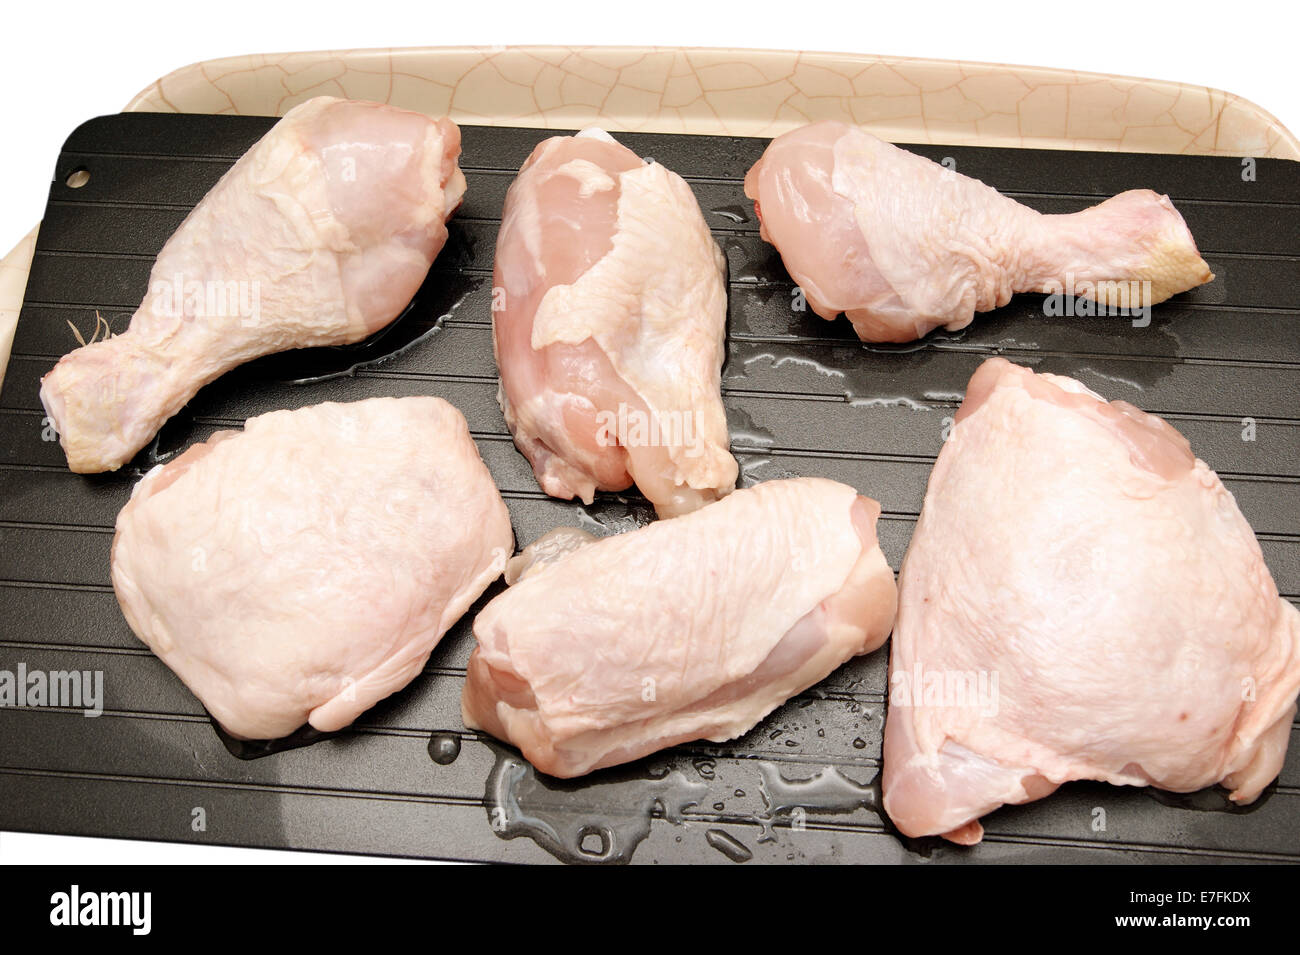 Lo sbrinamento le cosce di pollo & cosce su un super vassoio di sbrinamento per accelerare il naturale processo quindi portarli a temperatura ambiente più rapidamente. Foto Stock